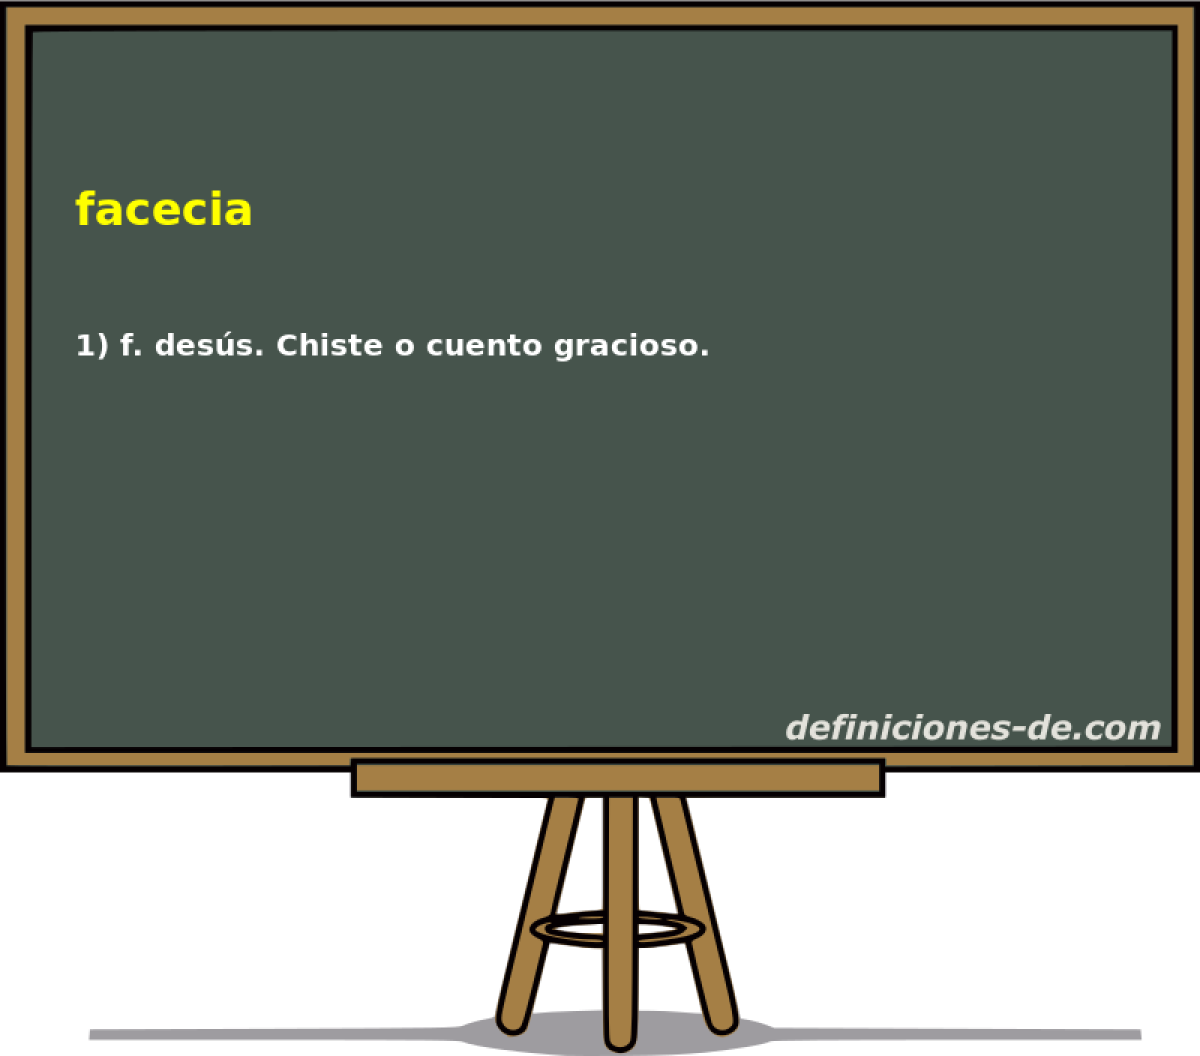 facecia 